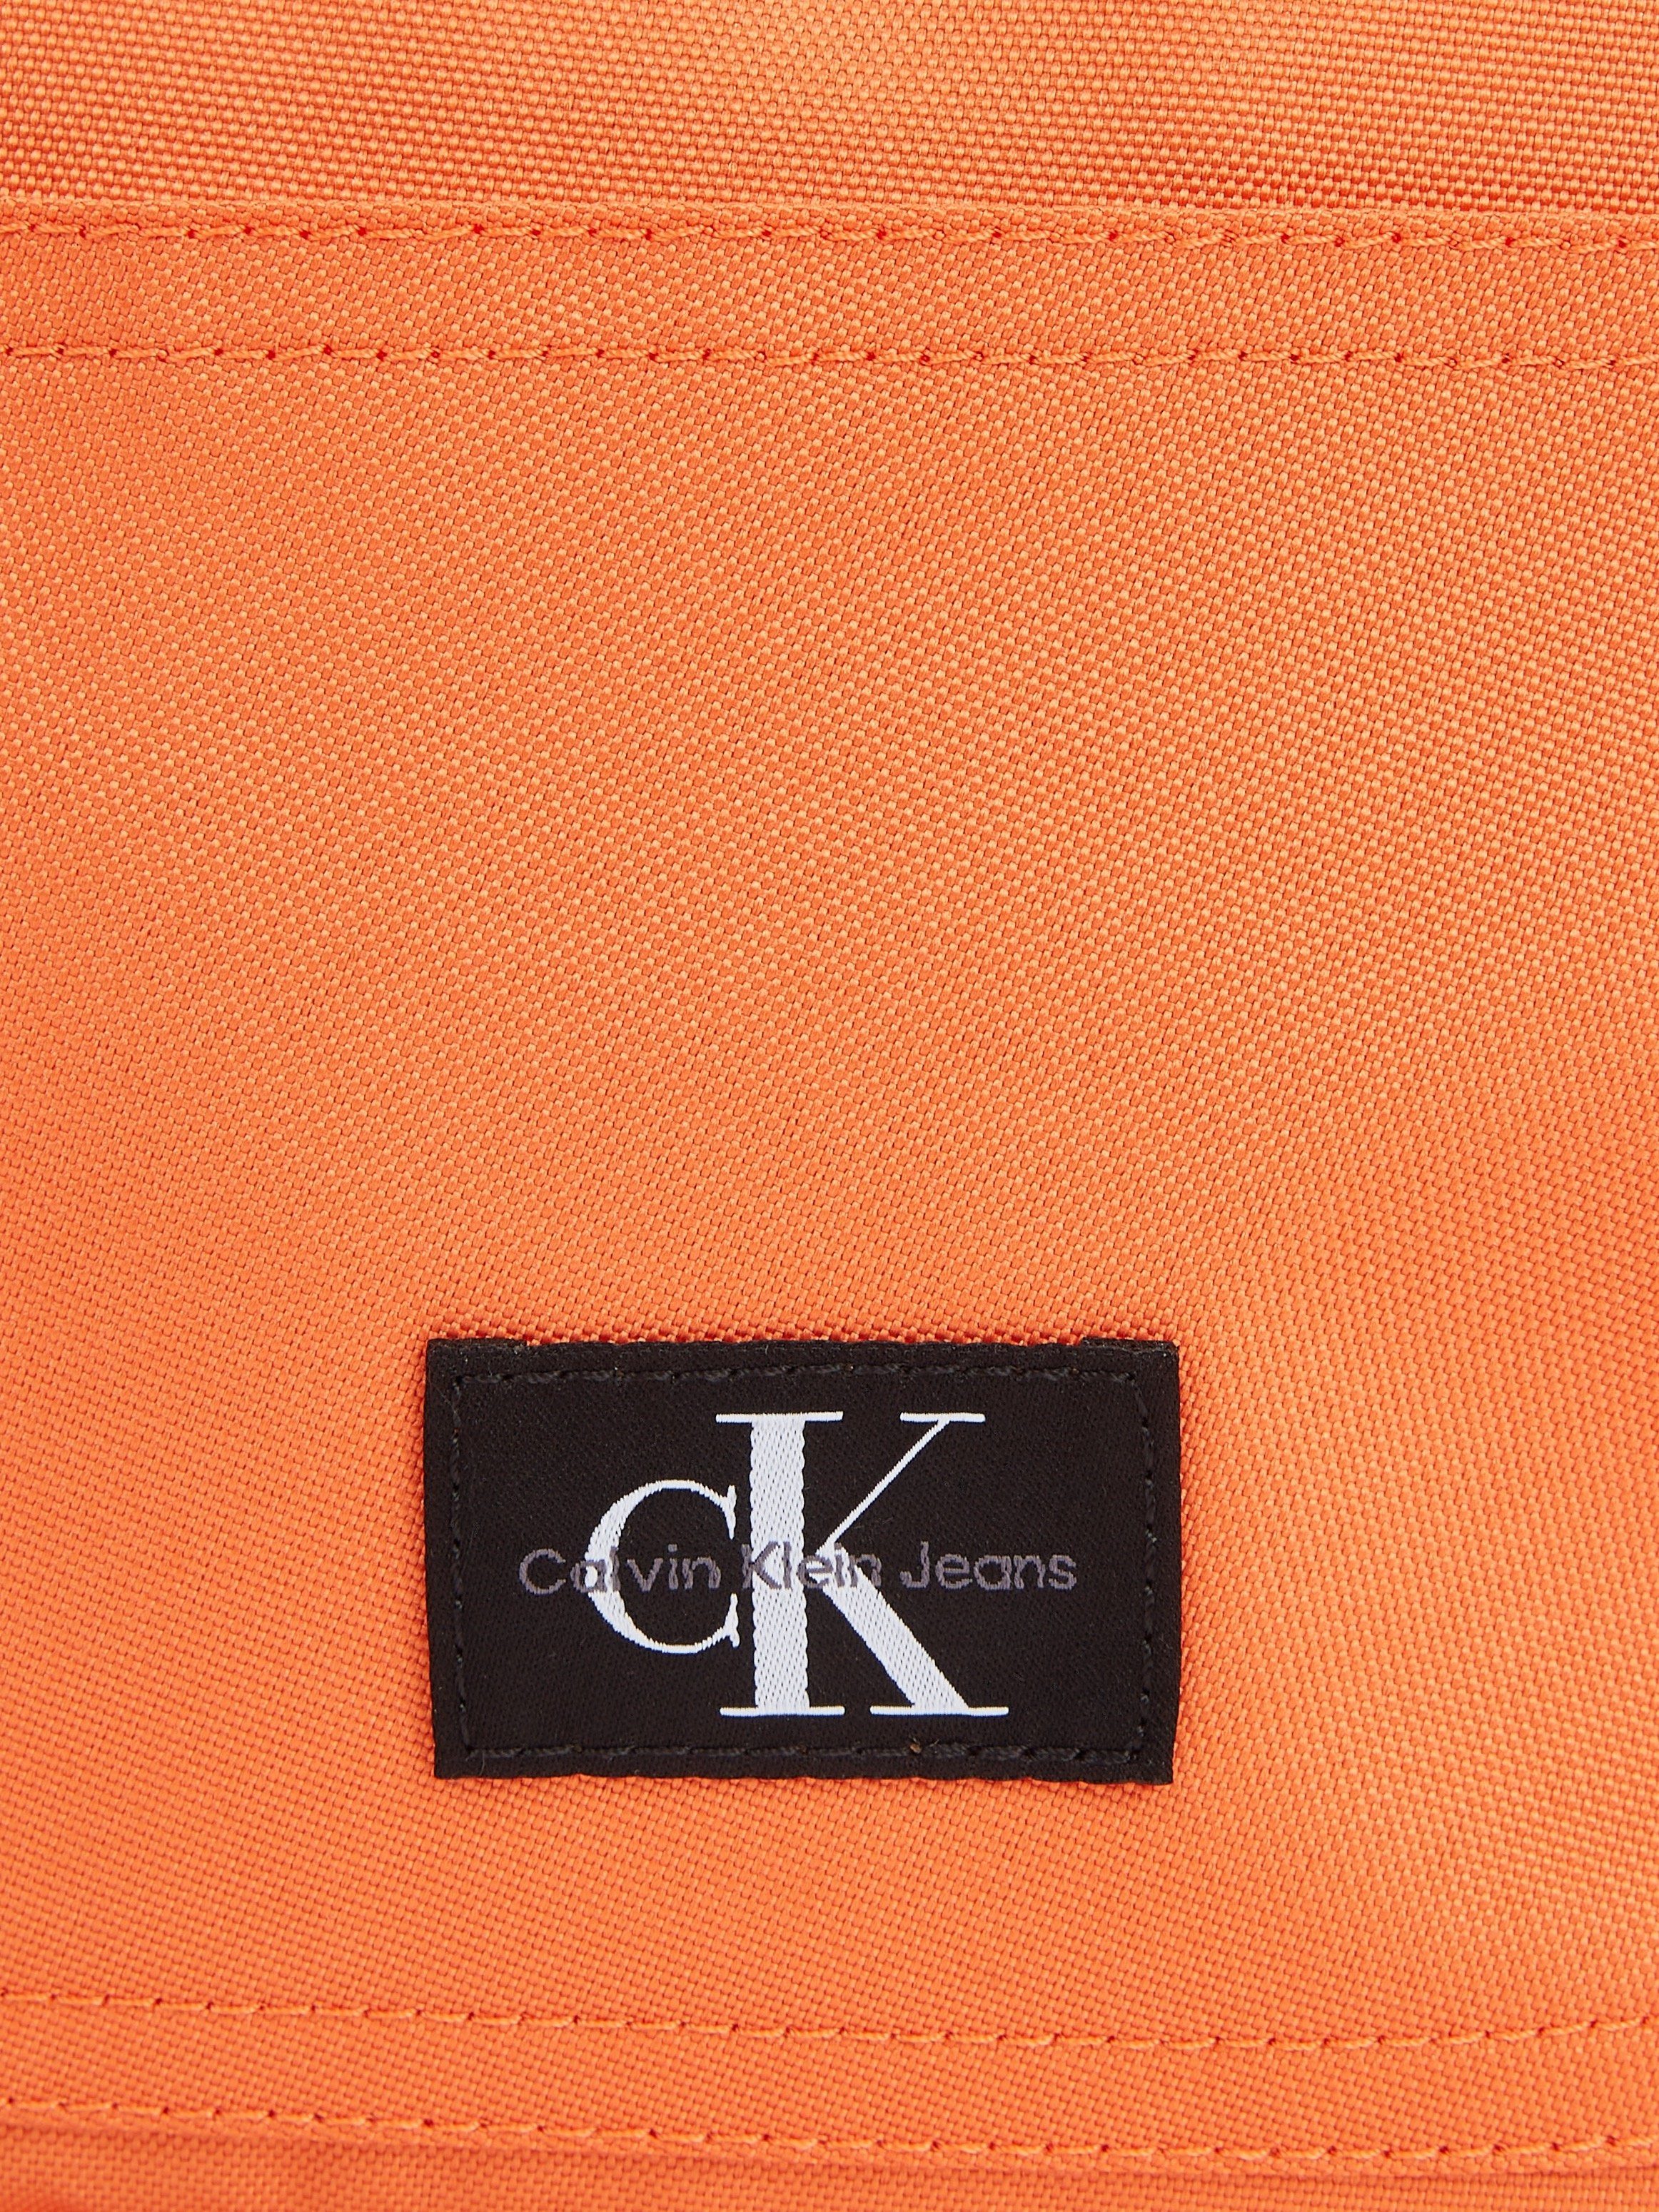 Calvin Klein Jeans Cityrucksack SPORT ESSENTIALS BP40 dezentem CAMPUS koralle W, Design in